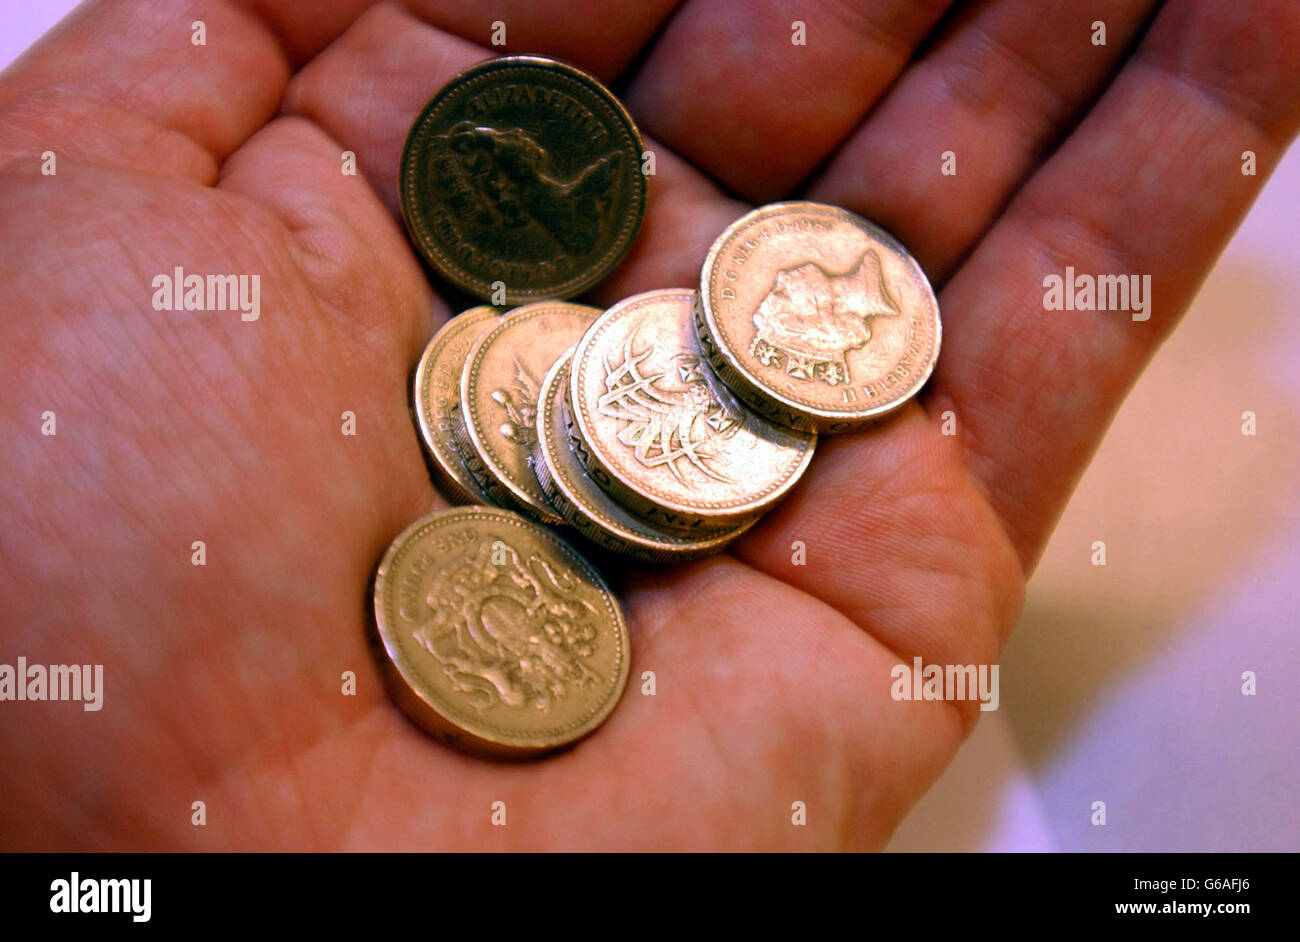 Britische Währung - 1 Münzen. Stock Bild der englischen One Pound Coins. Stockfoto